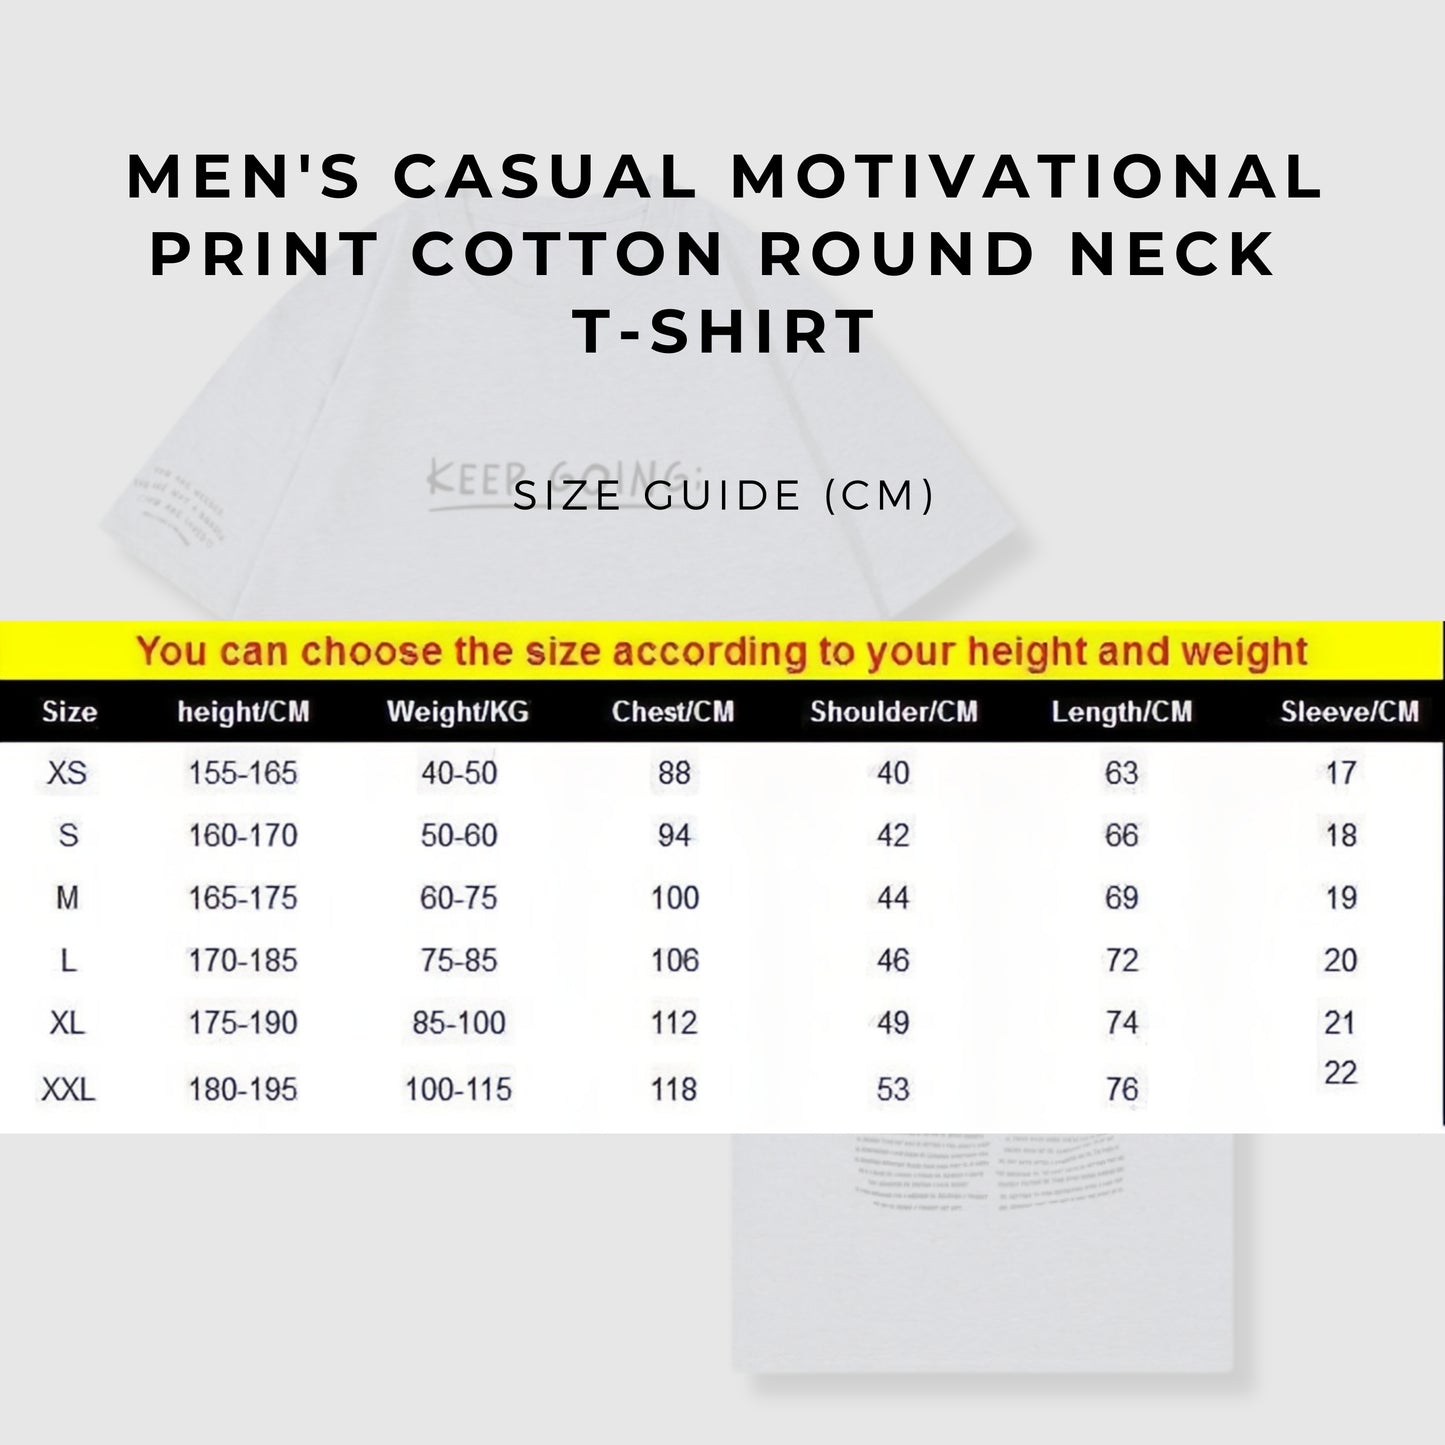 Men's Casual Motivational Print Cotton Round Neck T-shirt size